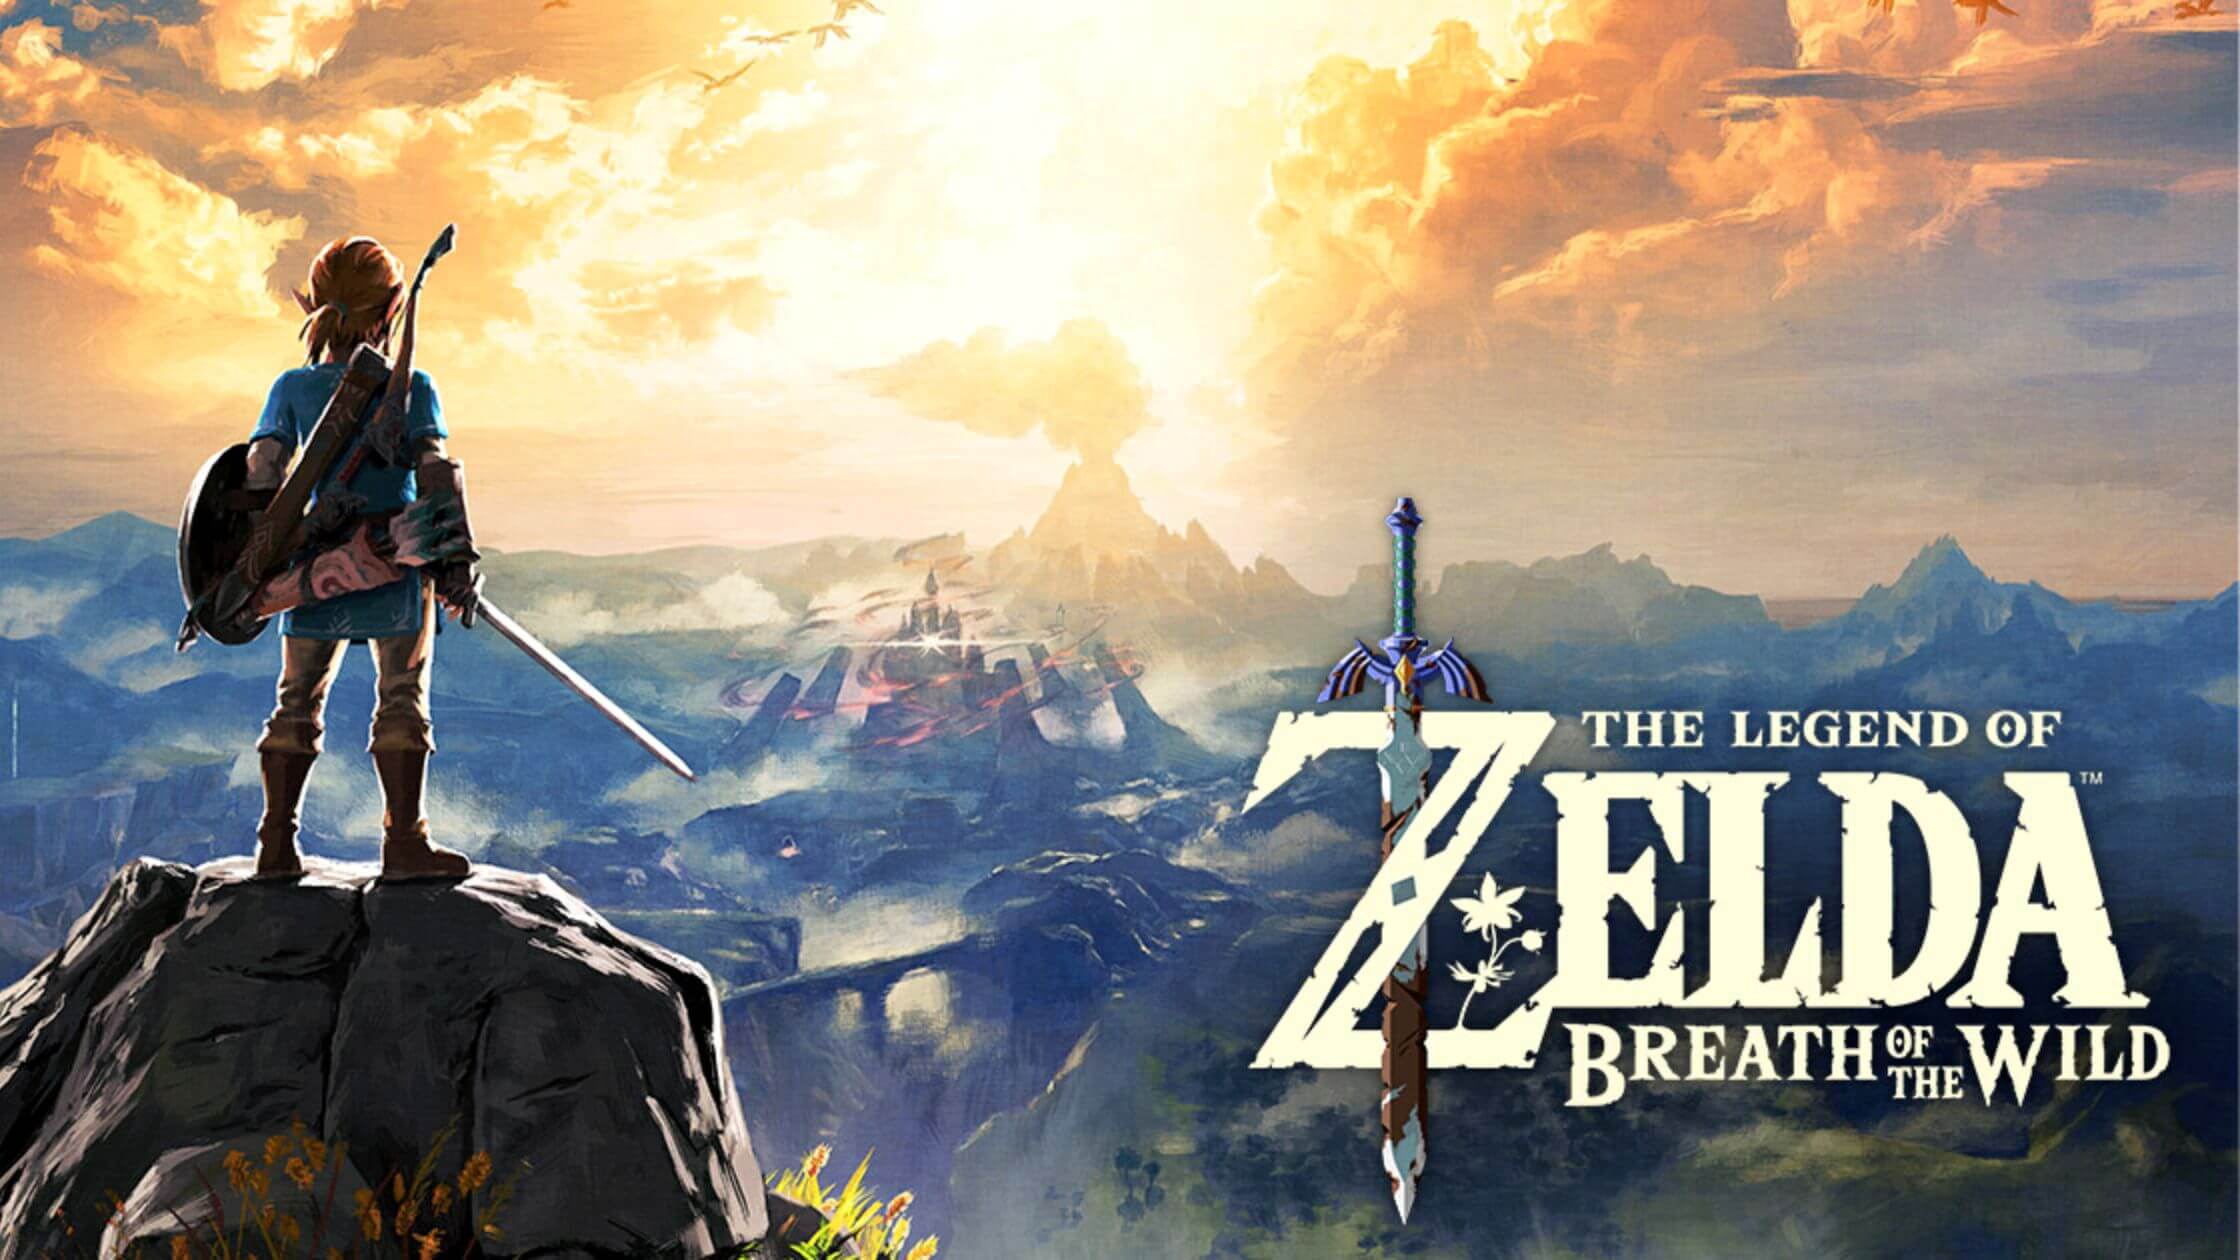 10. The Legend of Zelda: Breath of the Wild